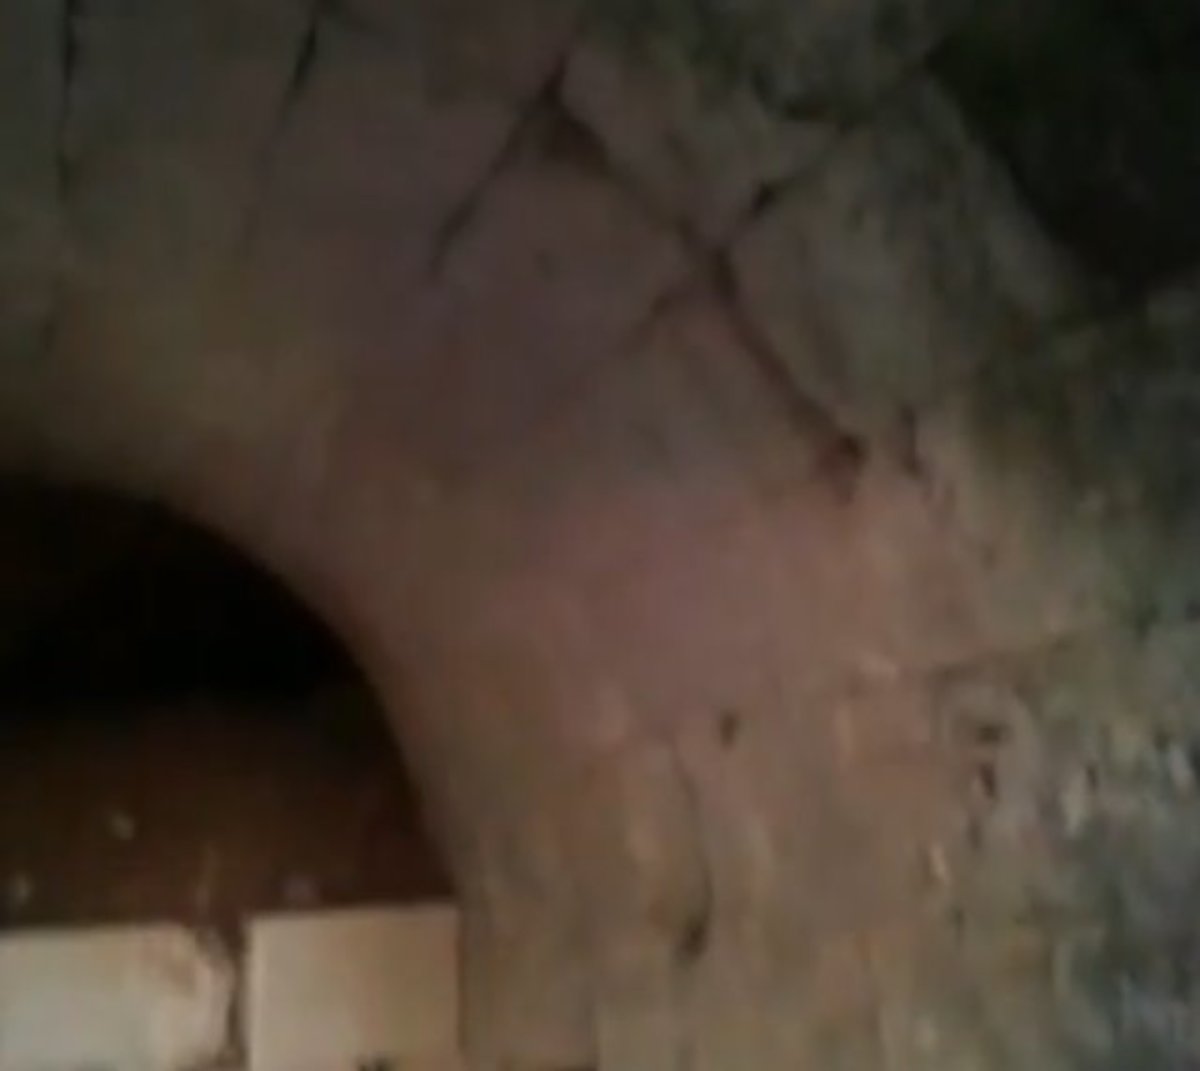 Αμφίπολη: Μέσα στον άγνωστο Μακεδονικό τάφο – Το βίντεο των 58 δευτερολέπτων – Οι γρίφοι, τα νέα ευρήματα και η αποκάλυψη του μεγάλου μυστικού!